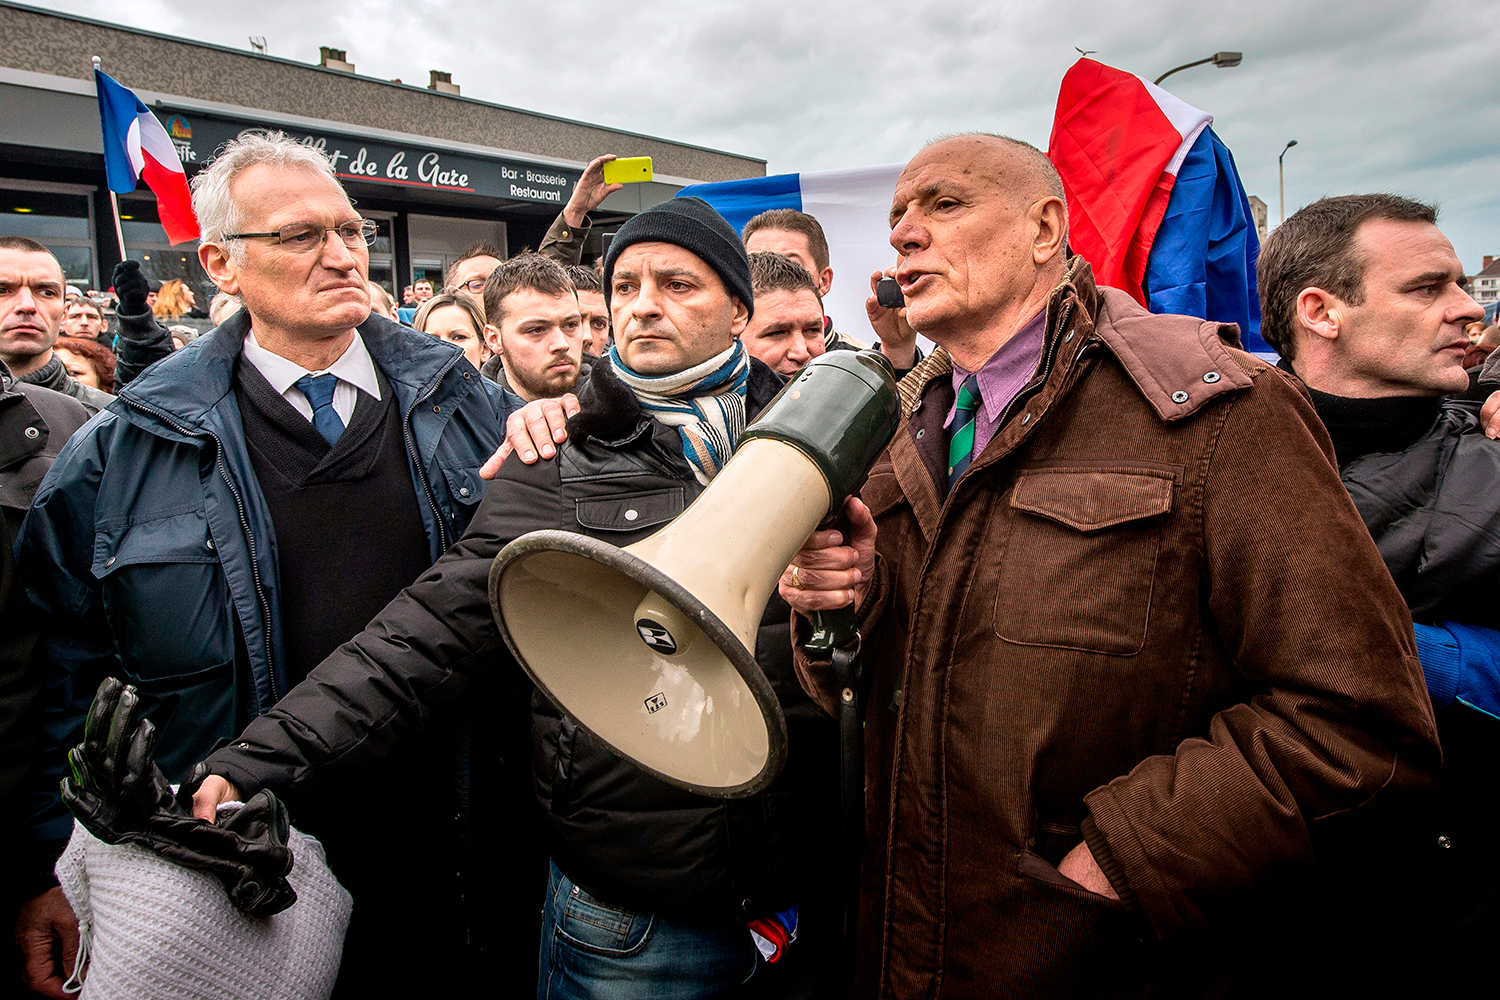 Un general retirado de 75 años lidera la revuelta contra los inmigrantes de Calais